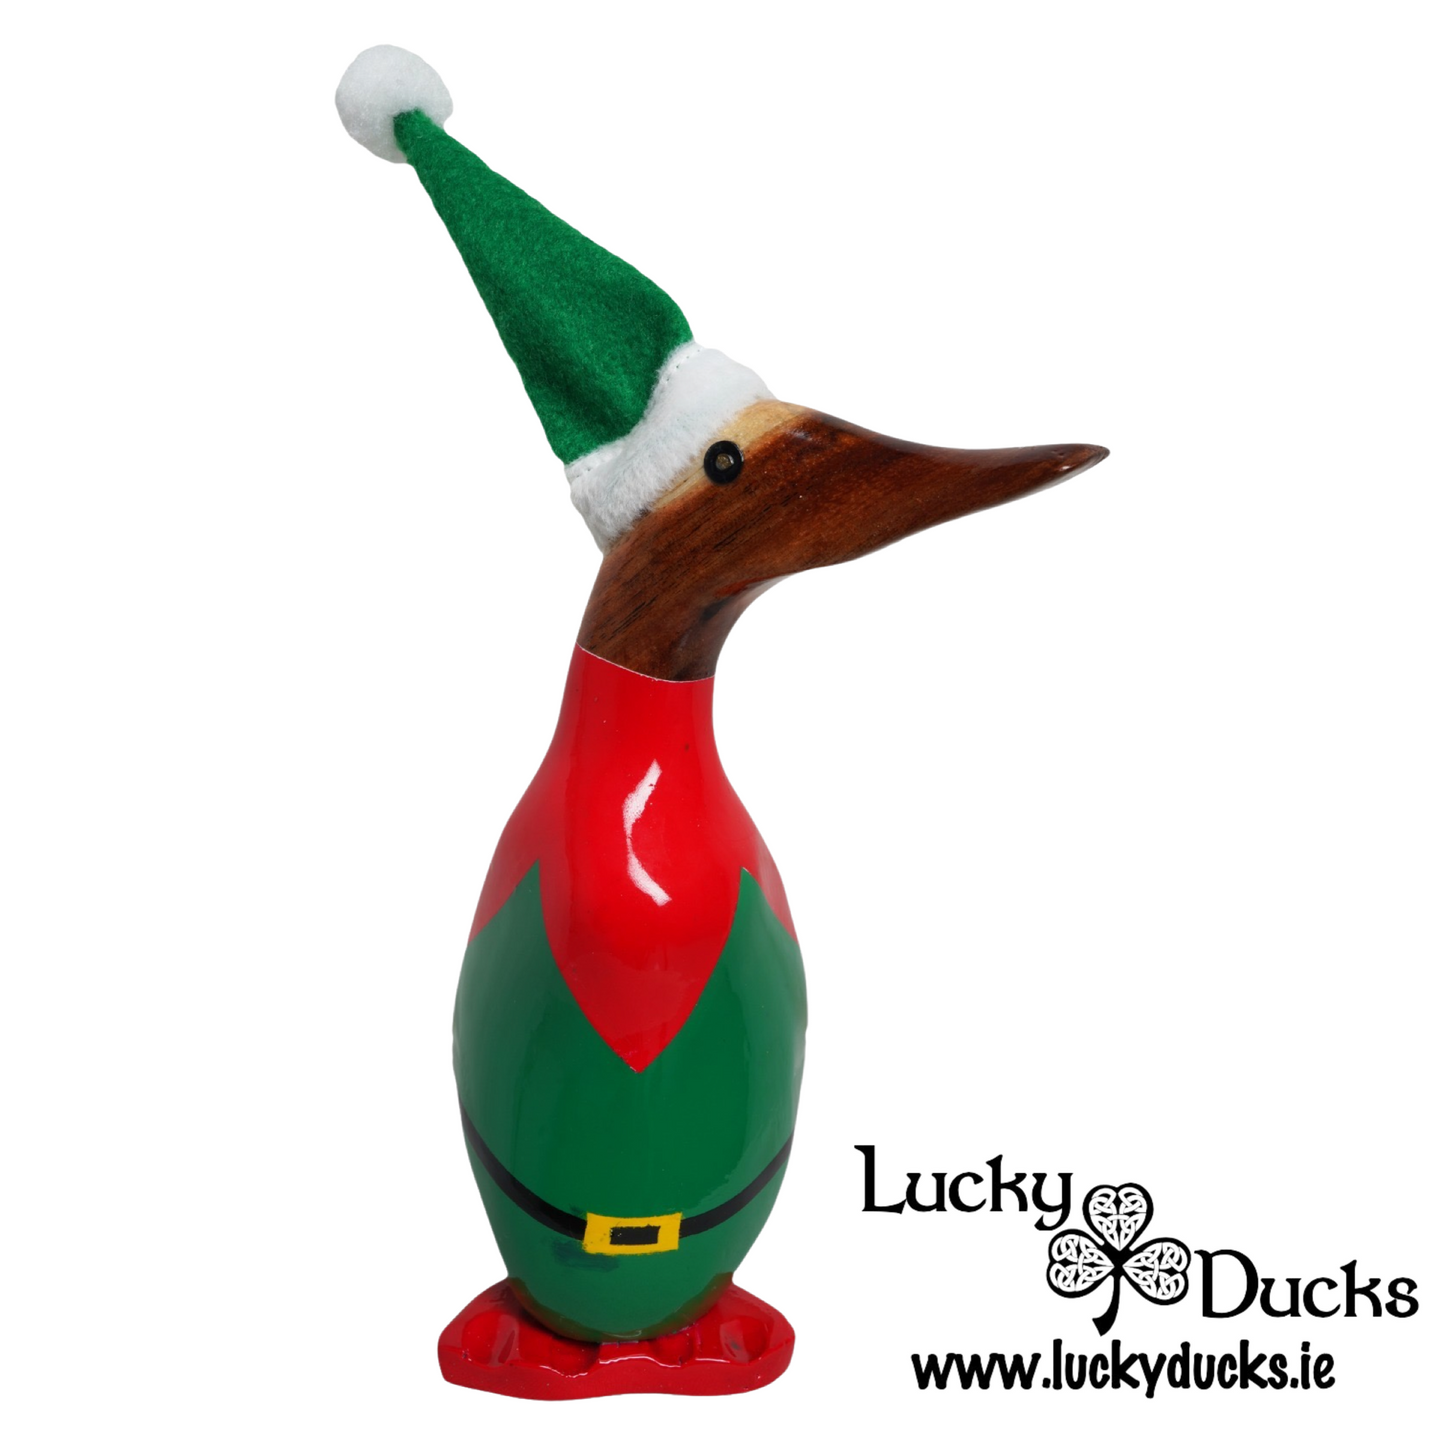 Elf Duckling